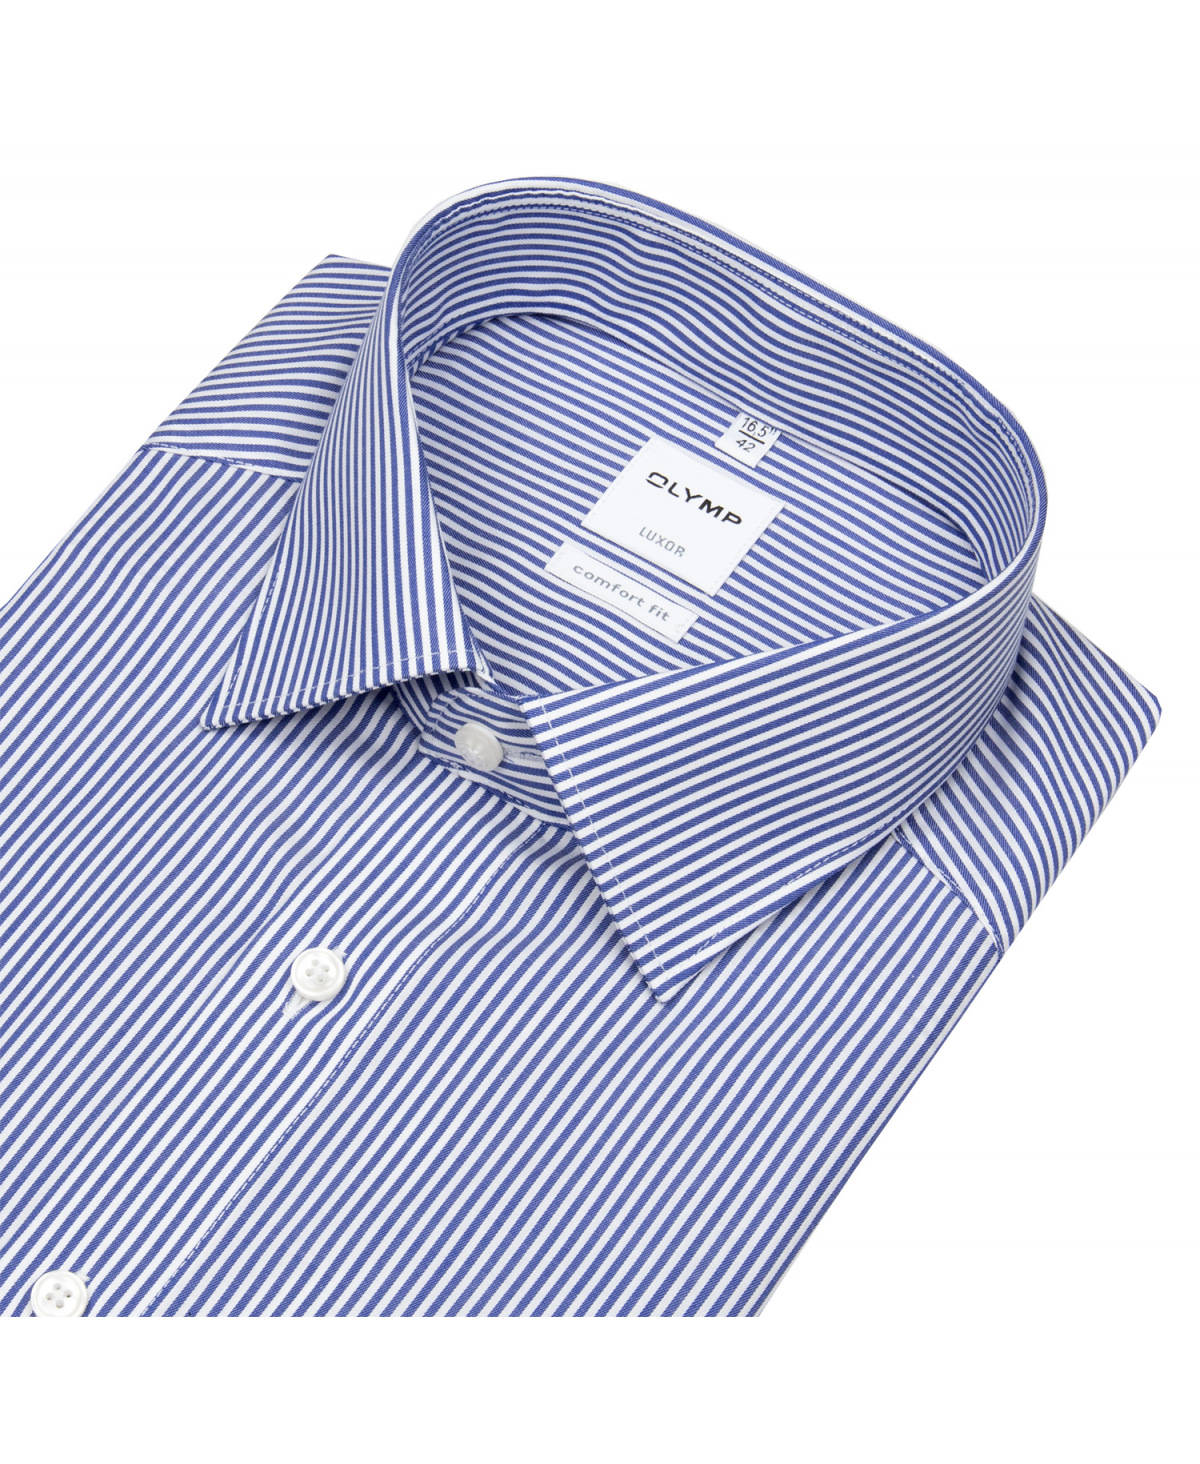 - OLYMP Hemd Streifen weiß Luxor - blau - Fit / Twill - Comfort